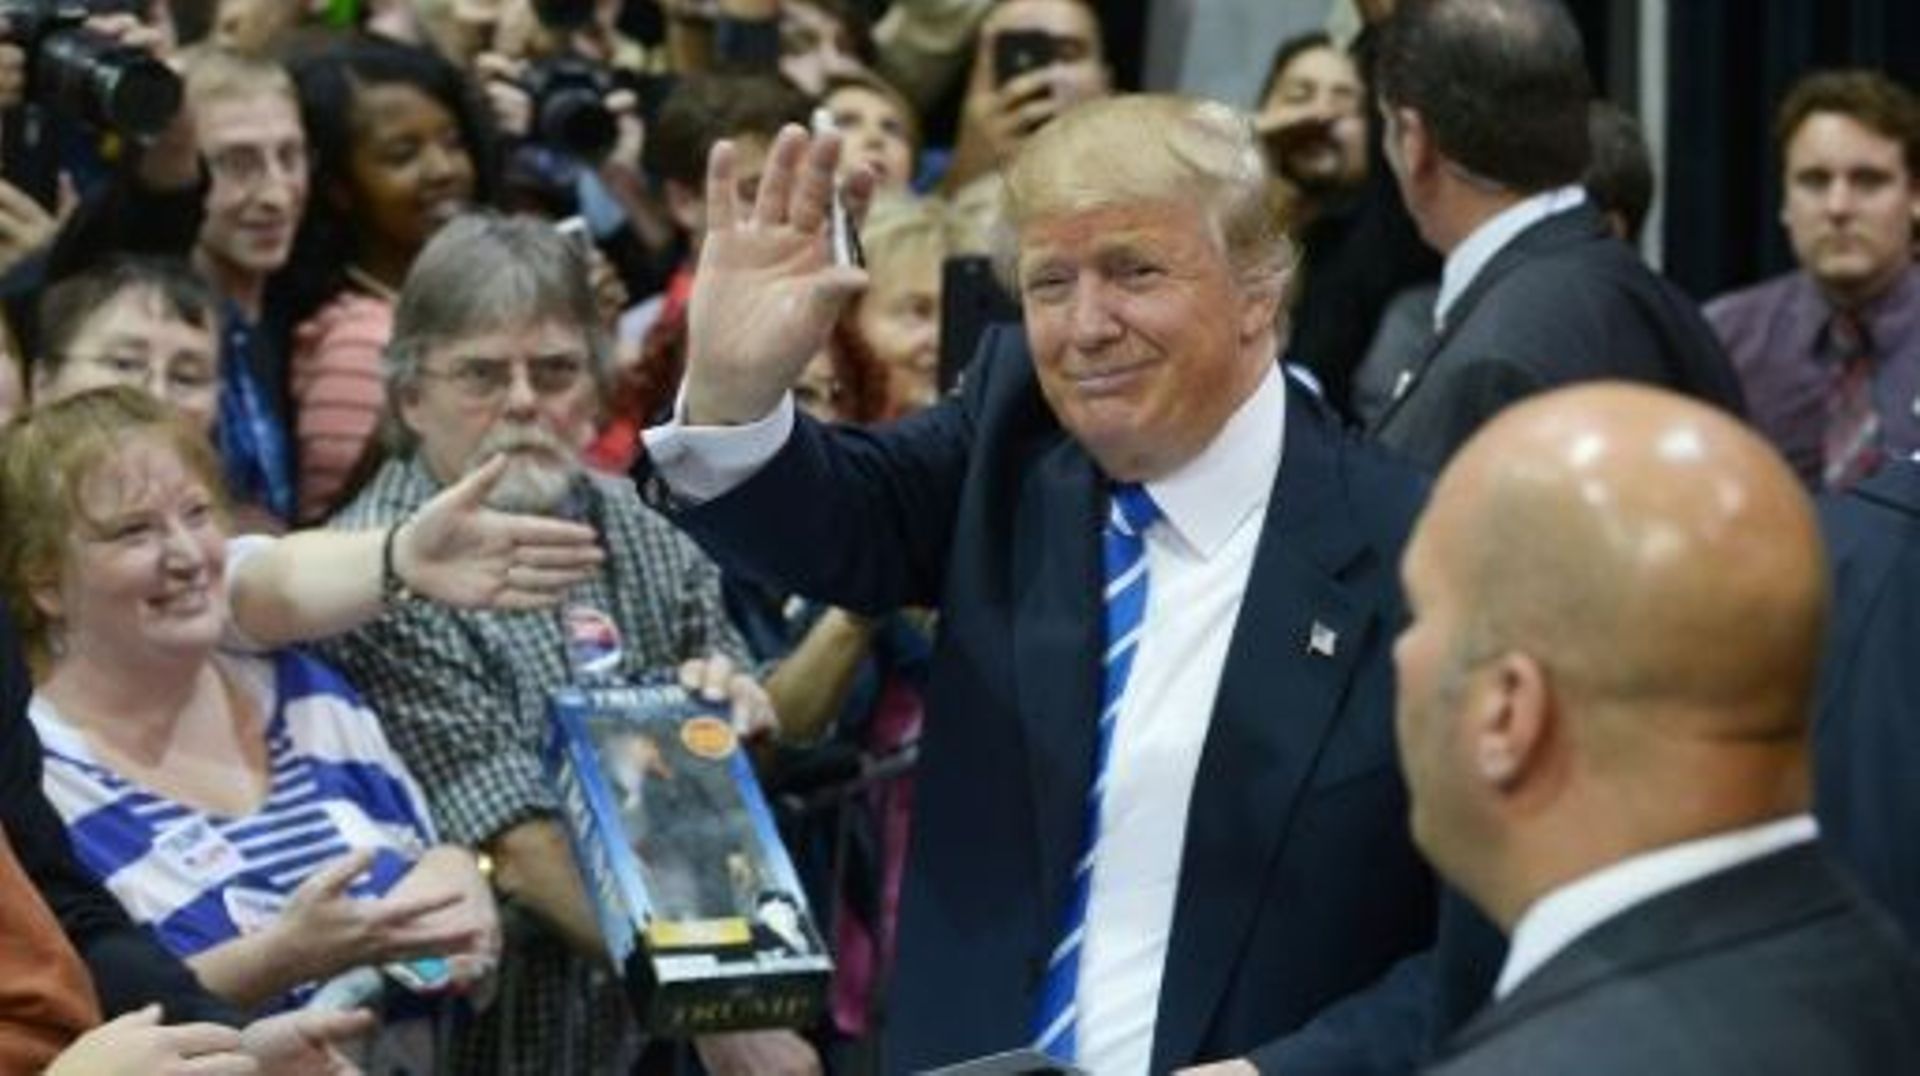 Le candidat républicain Donald Trump lors d'un meeting avec ses soutiens à Richmond en Virginie, le 14 octobre 2015